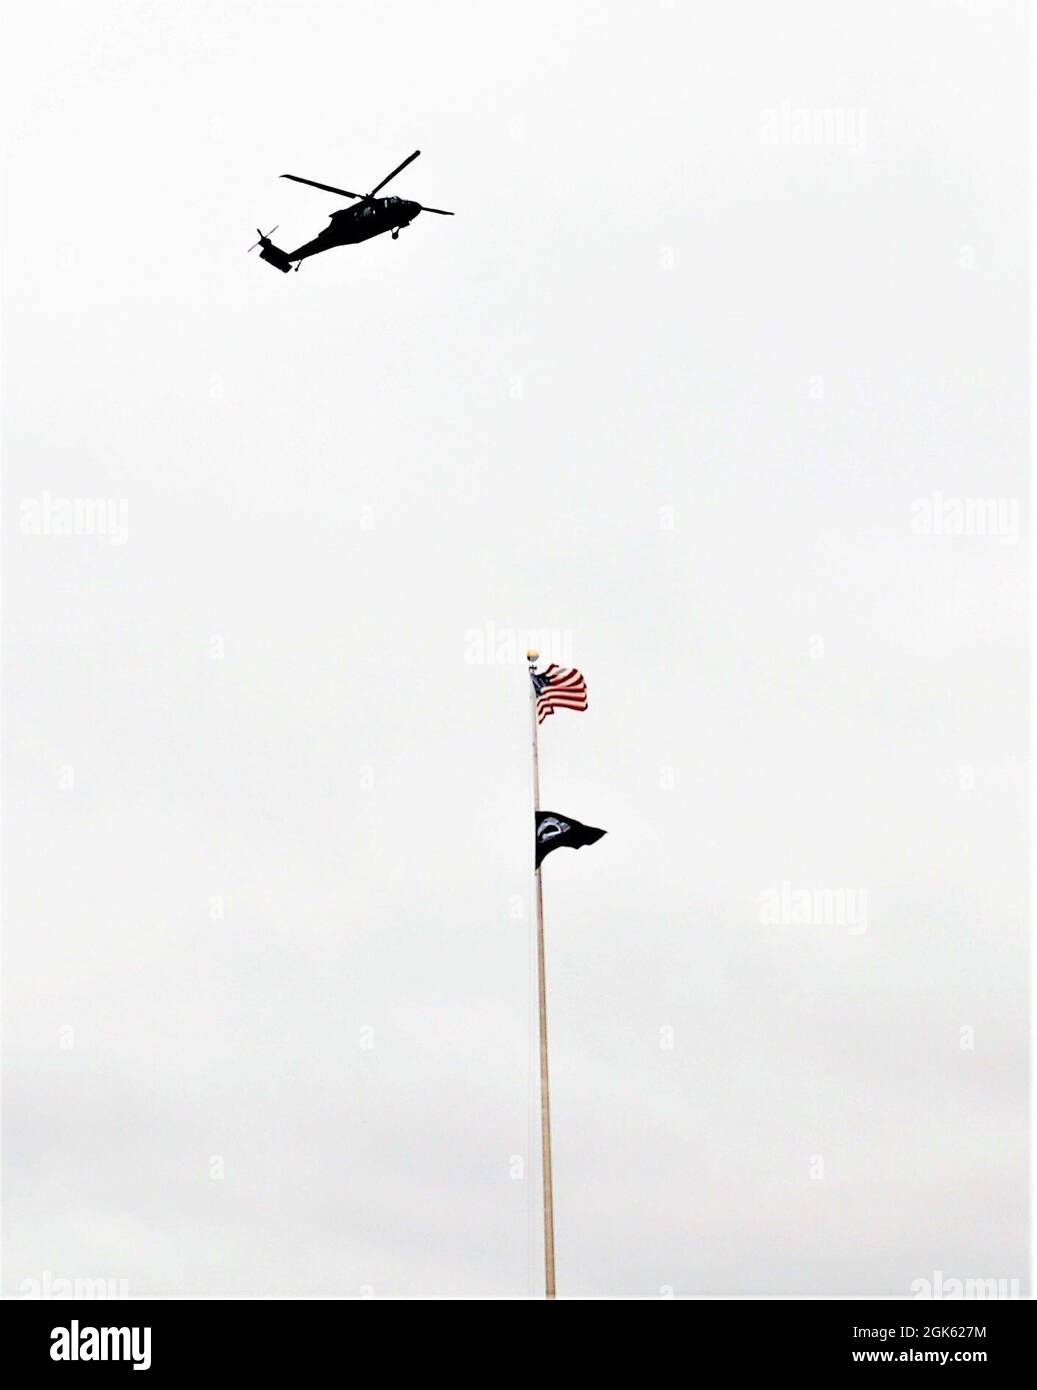 Un elicottero UH-60 Black Hawk operato da un equipaggio con la Guardia Nazionale del Wisconsin è mostrato condurre operazioni nell'area del cantonment 11 agosto 2021, a Fort McCoy, Wis., come parte delle operazioni di addestramento all'installazione. Il Black Hawk UH-60 è stato l'elicottero di prima linea dell'esercito per i servizi pubblici negli ultimi 40 anni, E non mostra segni di lasciare in su, ha detto i funzionari di servizio all'Arsenal di Redstone, Ala. L'elicottero è un attrezzo normale ogni anno a Fort McCoy, Wis., particolarmente durante gli esercizi importanti quale l'esercitazione di addestramento di sostegno di combattimento. Black Hawk equipaggi con il 1° Battaglione, Foto Stock